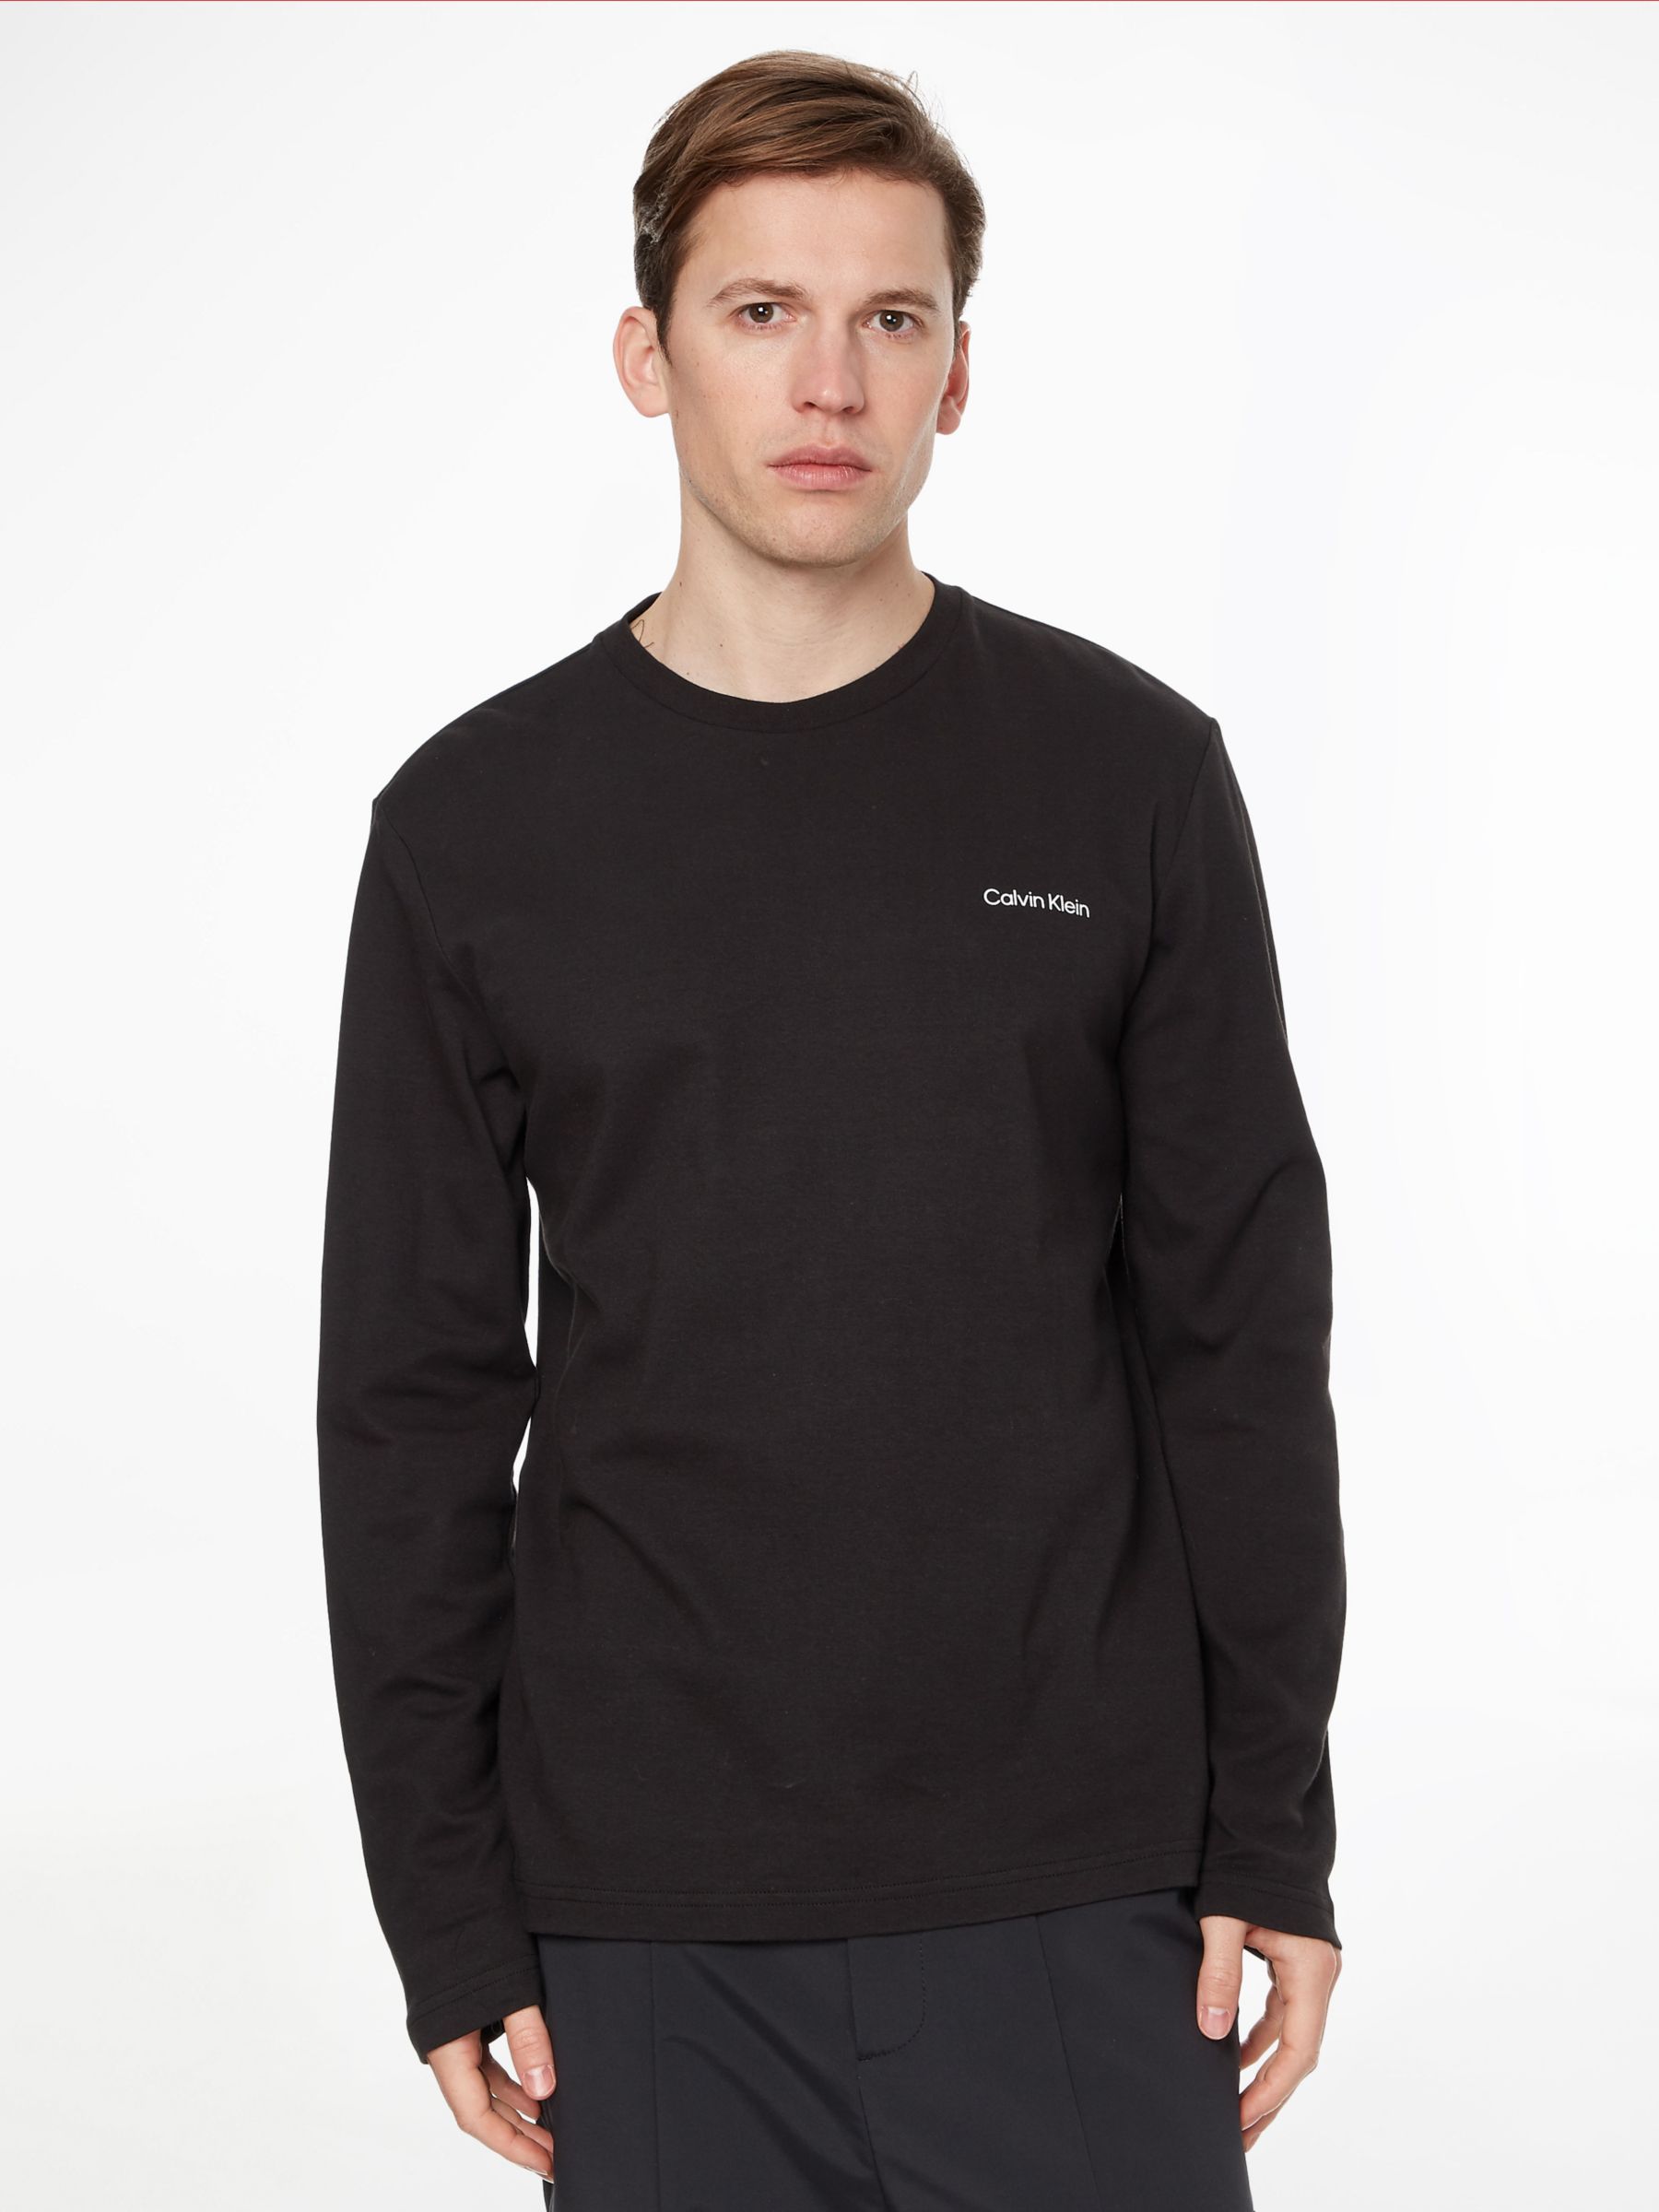 Calvin Klein Interlocking Long Sleeve T-Shirt, CK Black at John Lewis ...